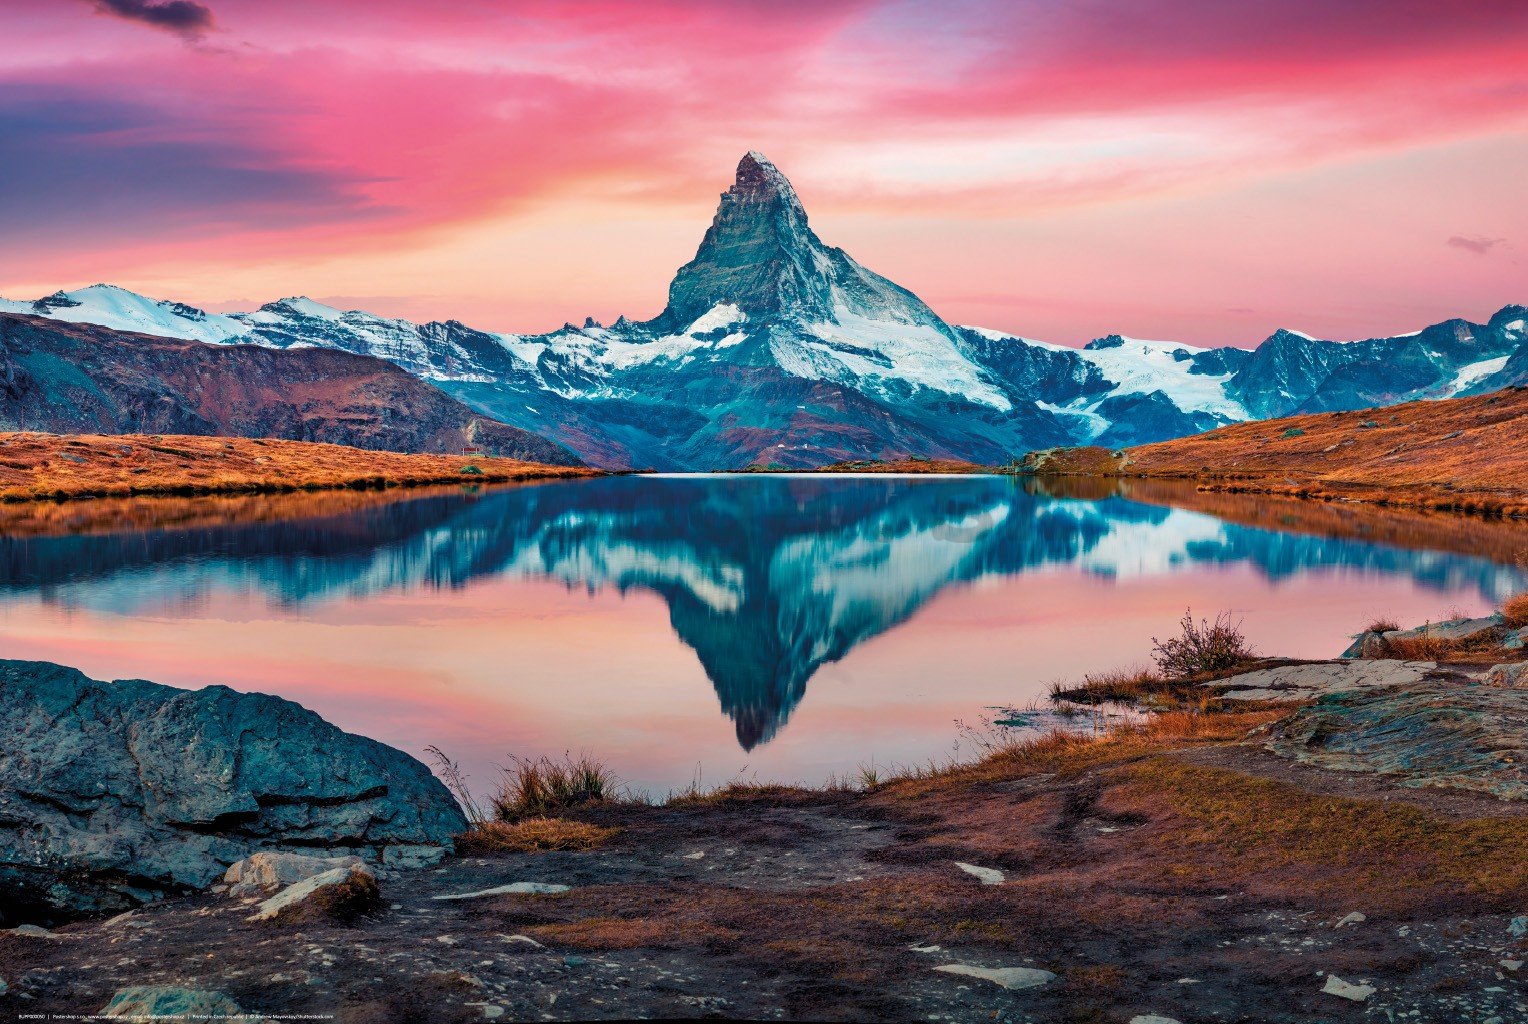 Plagát: Matterhorn